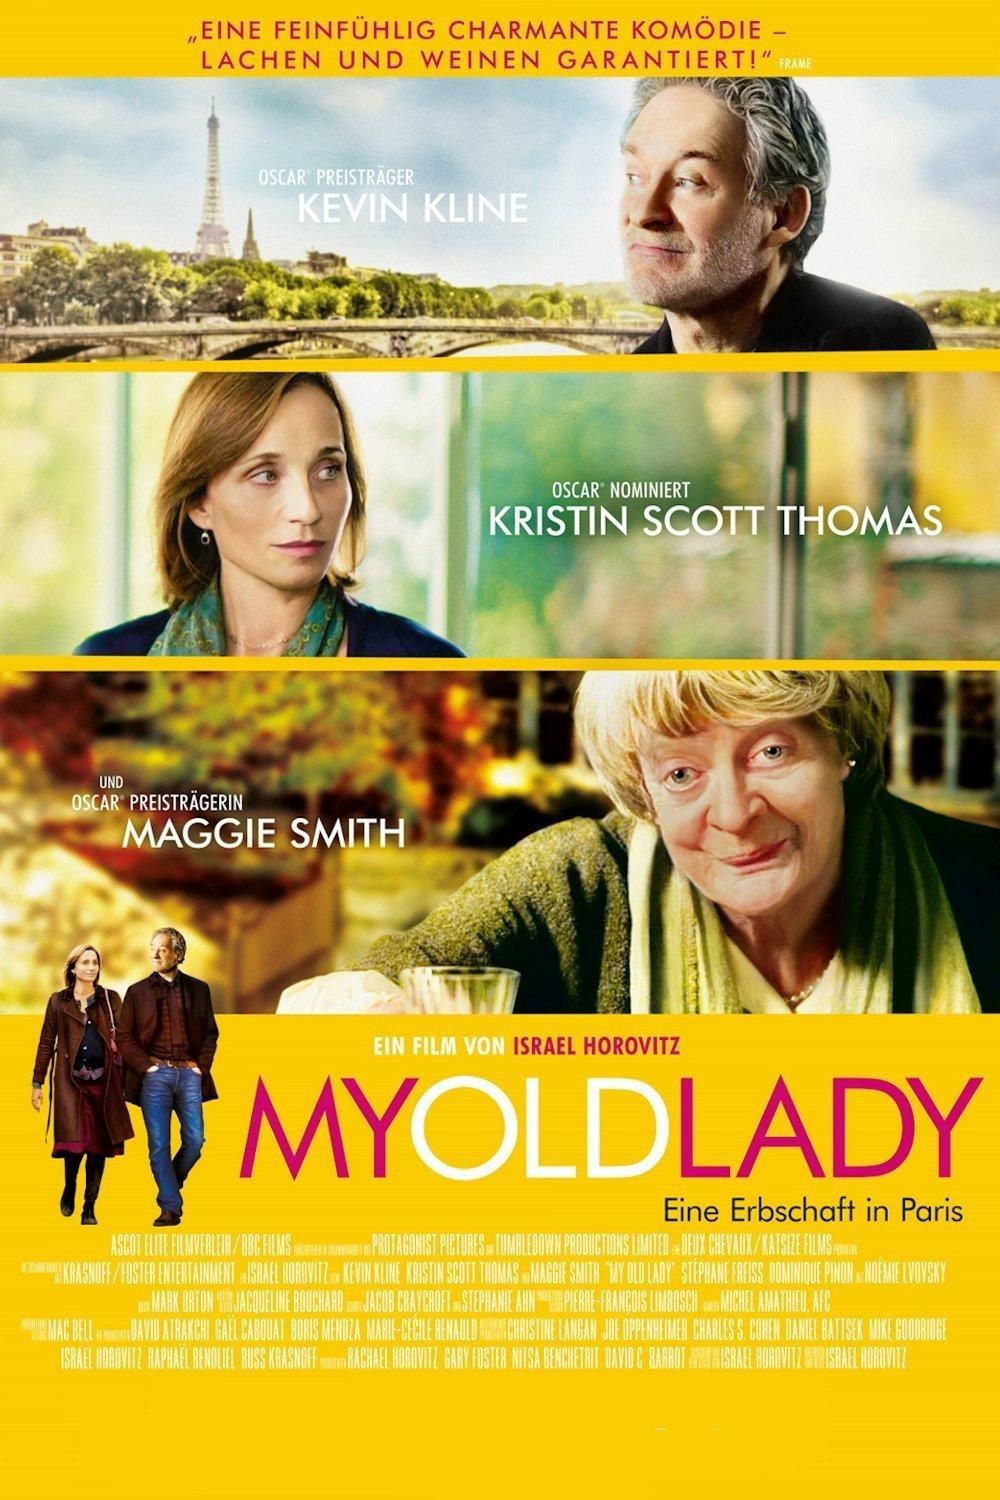 My Old Lady (2014) Film-information und Trailer KinoCheck Bild